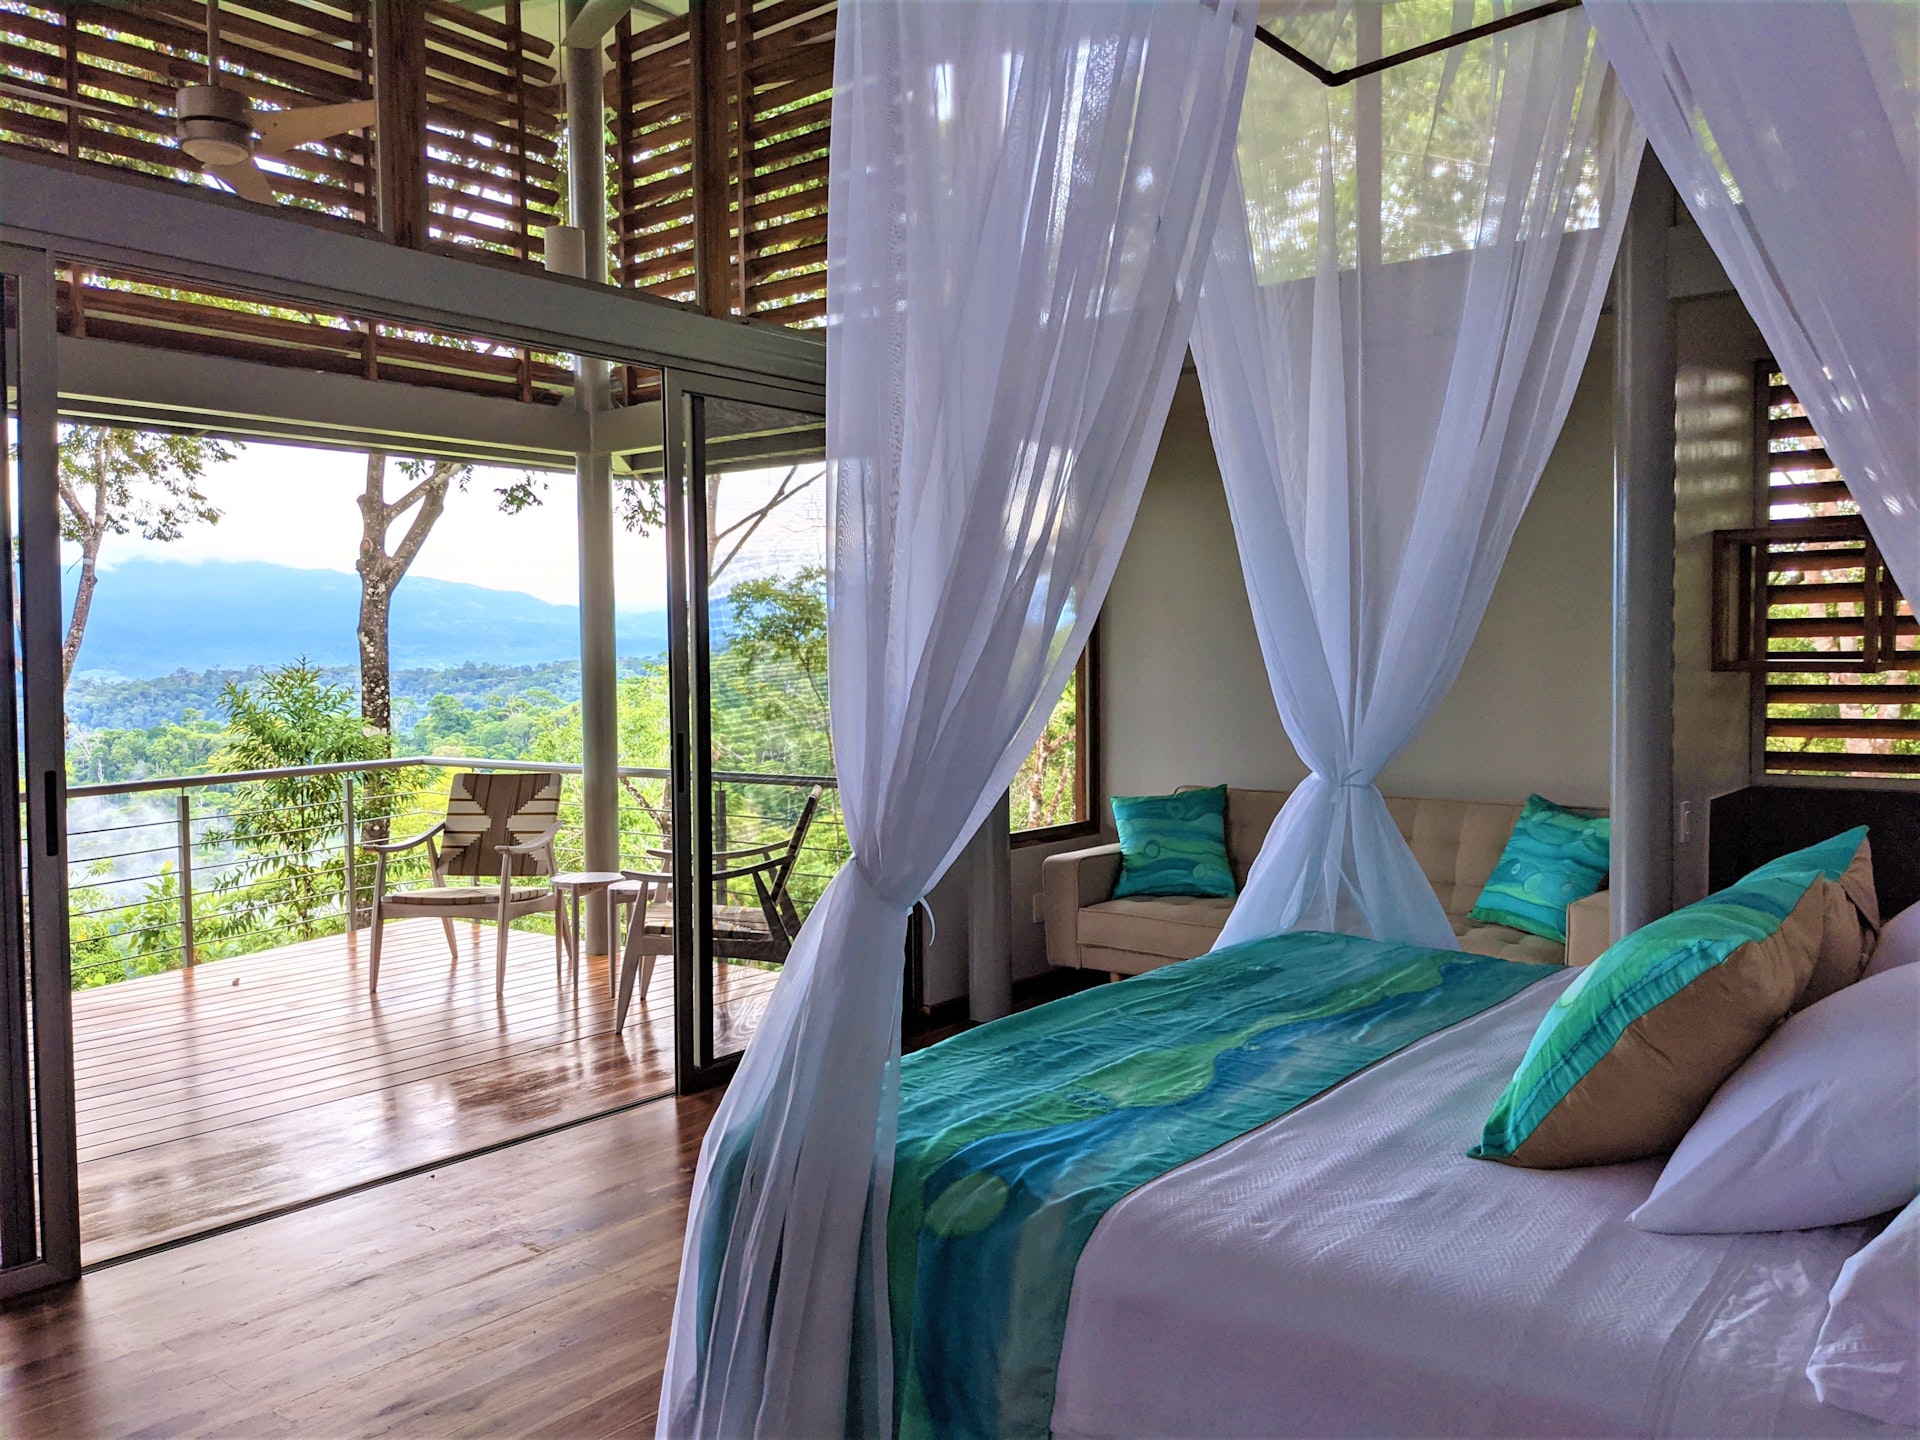  Els 7 llocs més singulars de Costa Rica per allotjar-se inclouen iglús tropicals i cases en arbres